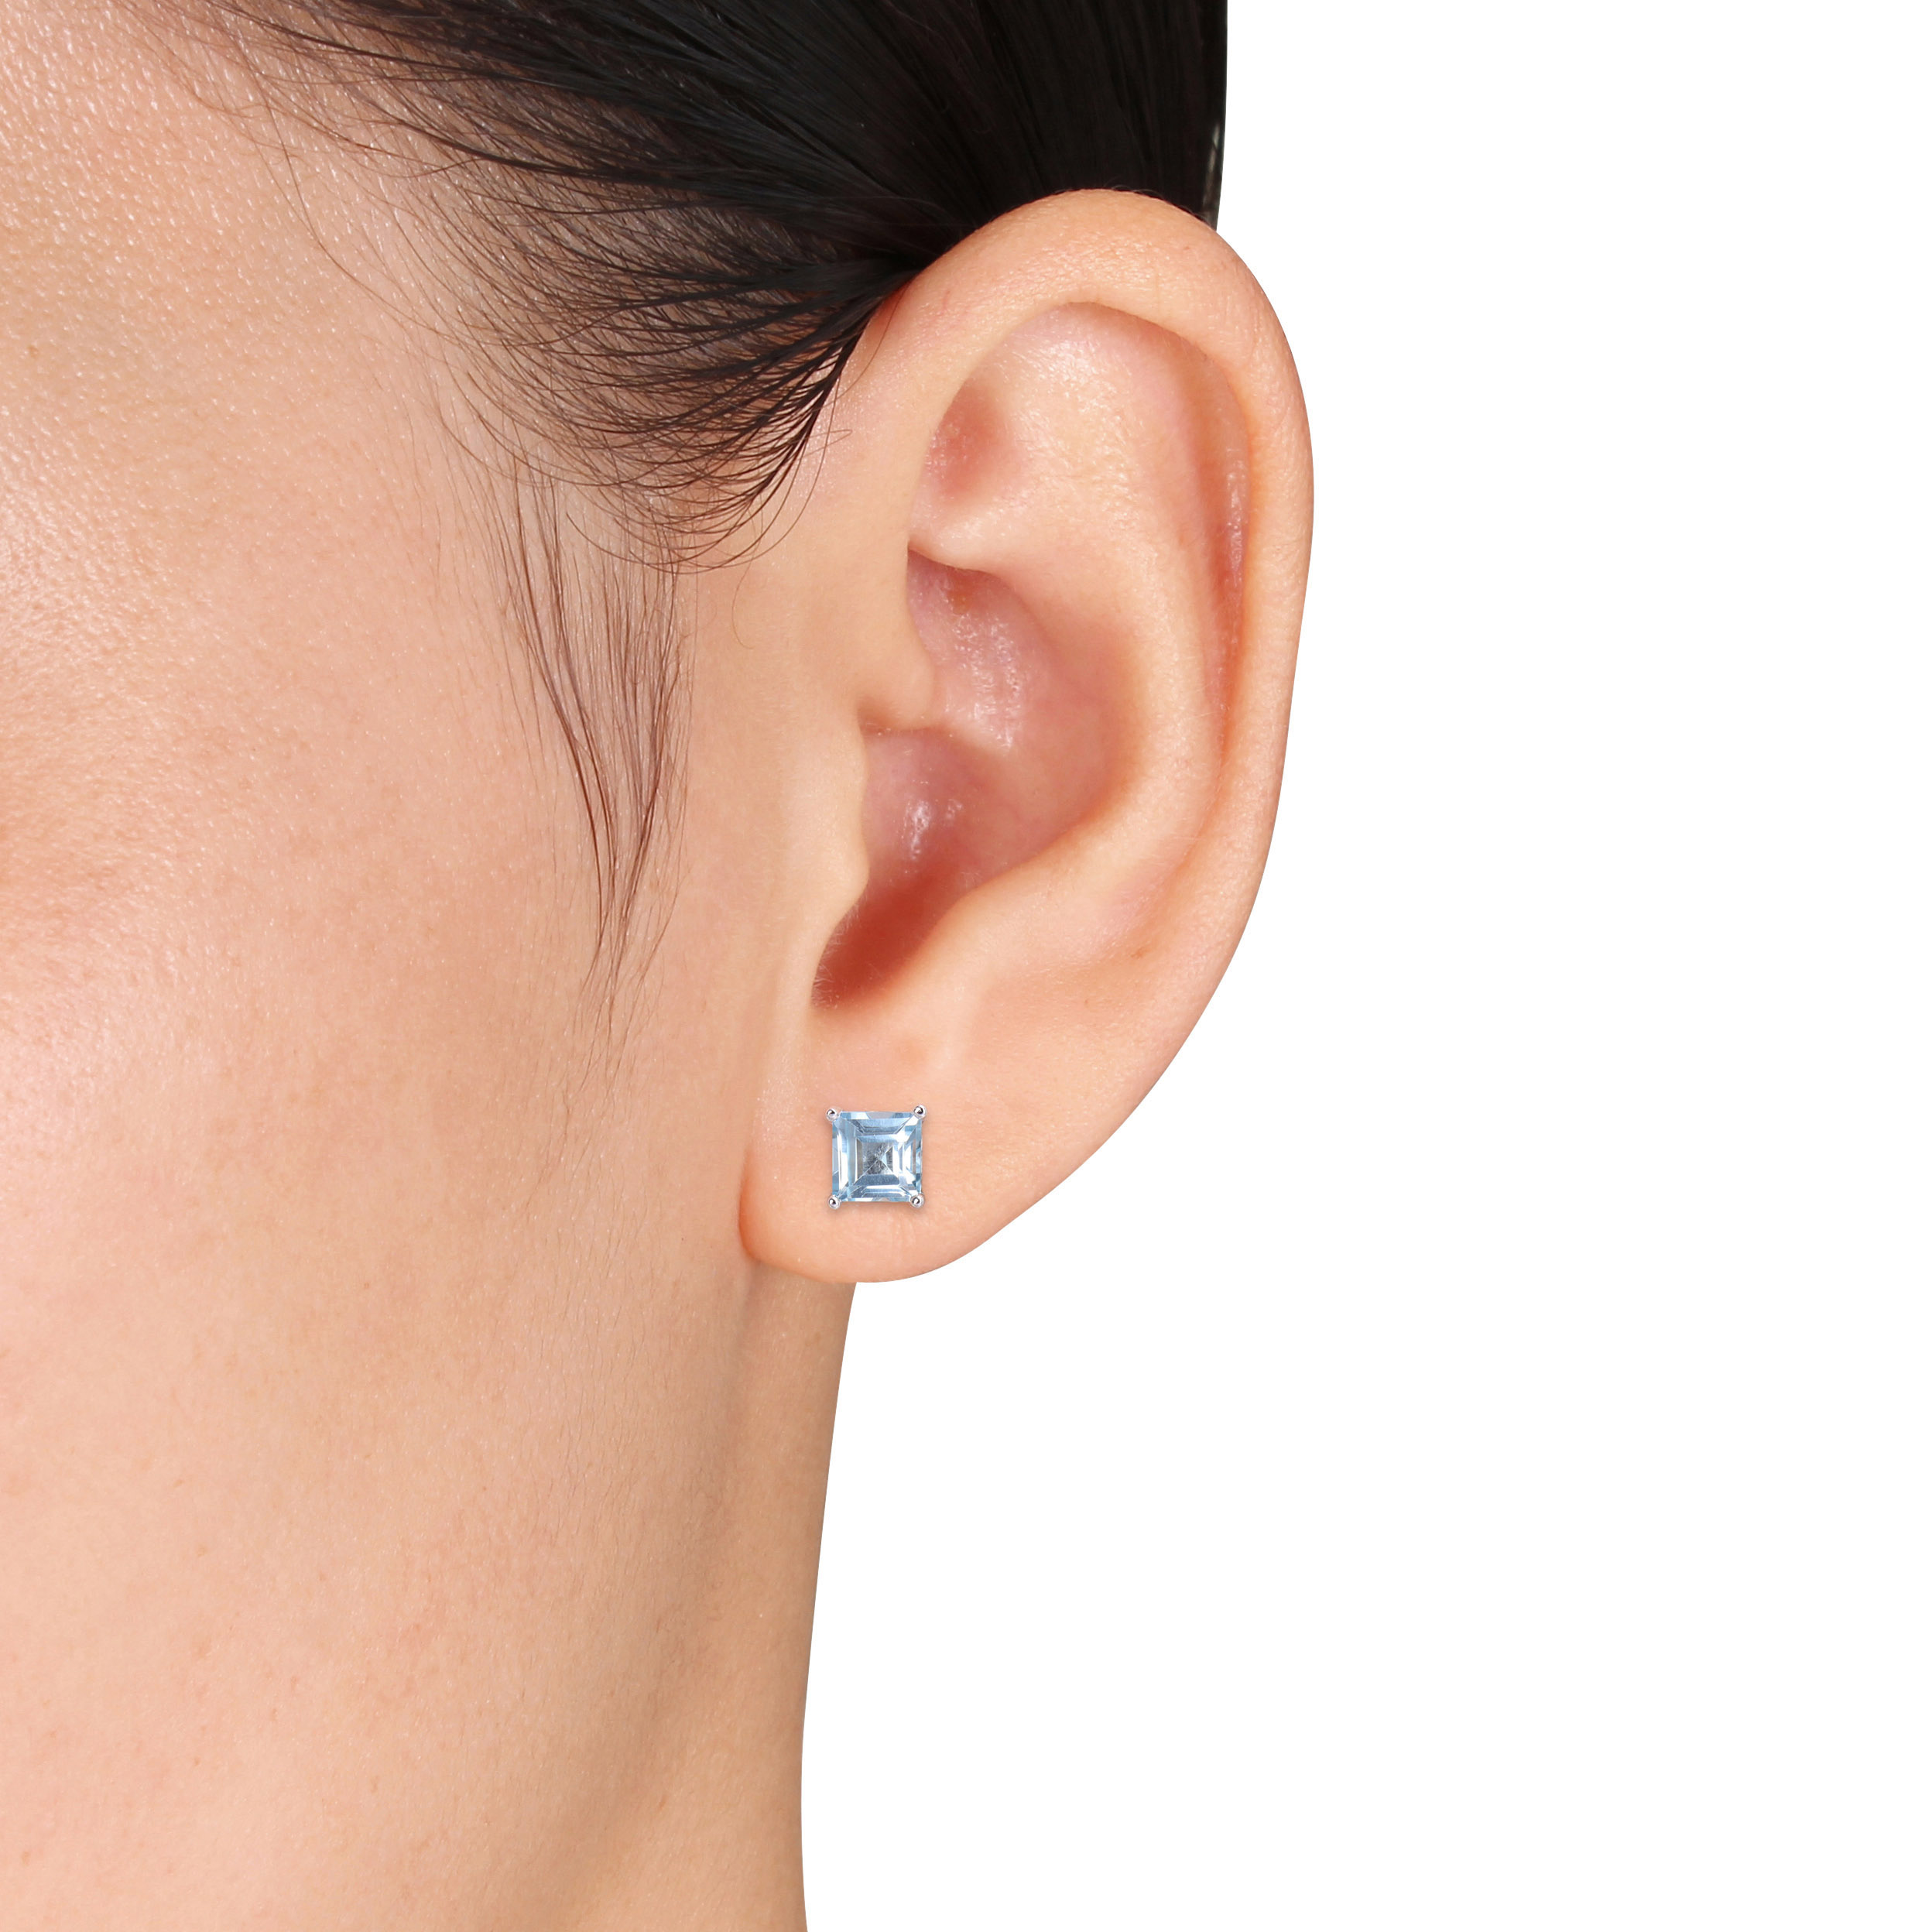 2 3/4 CT TGW Square Sky Blue Topaz Stud Earrings in Sterling Silver